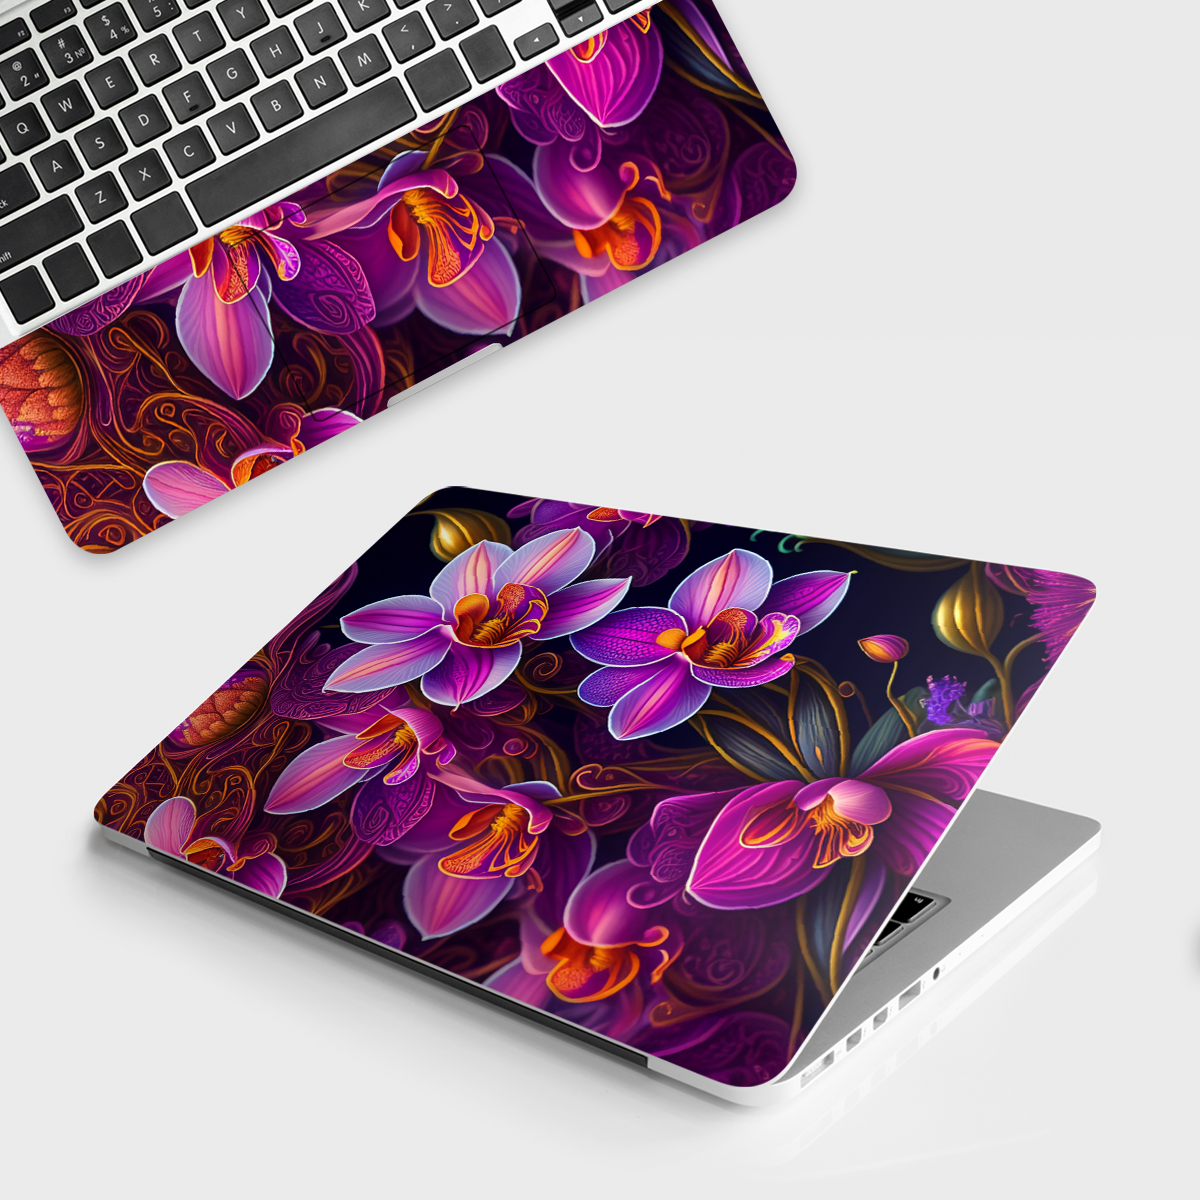 Fomo Store Laptop Skins Botanical Royal Purple Flowers